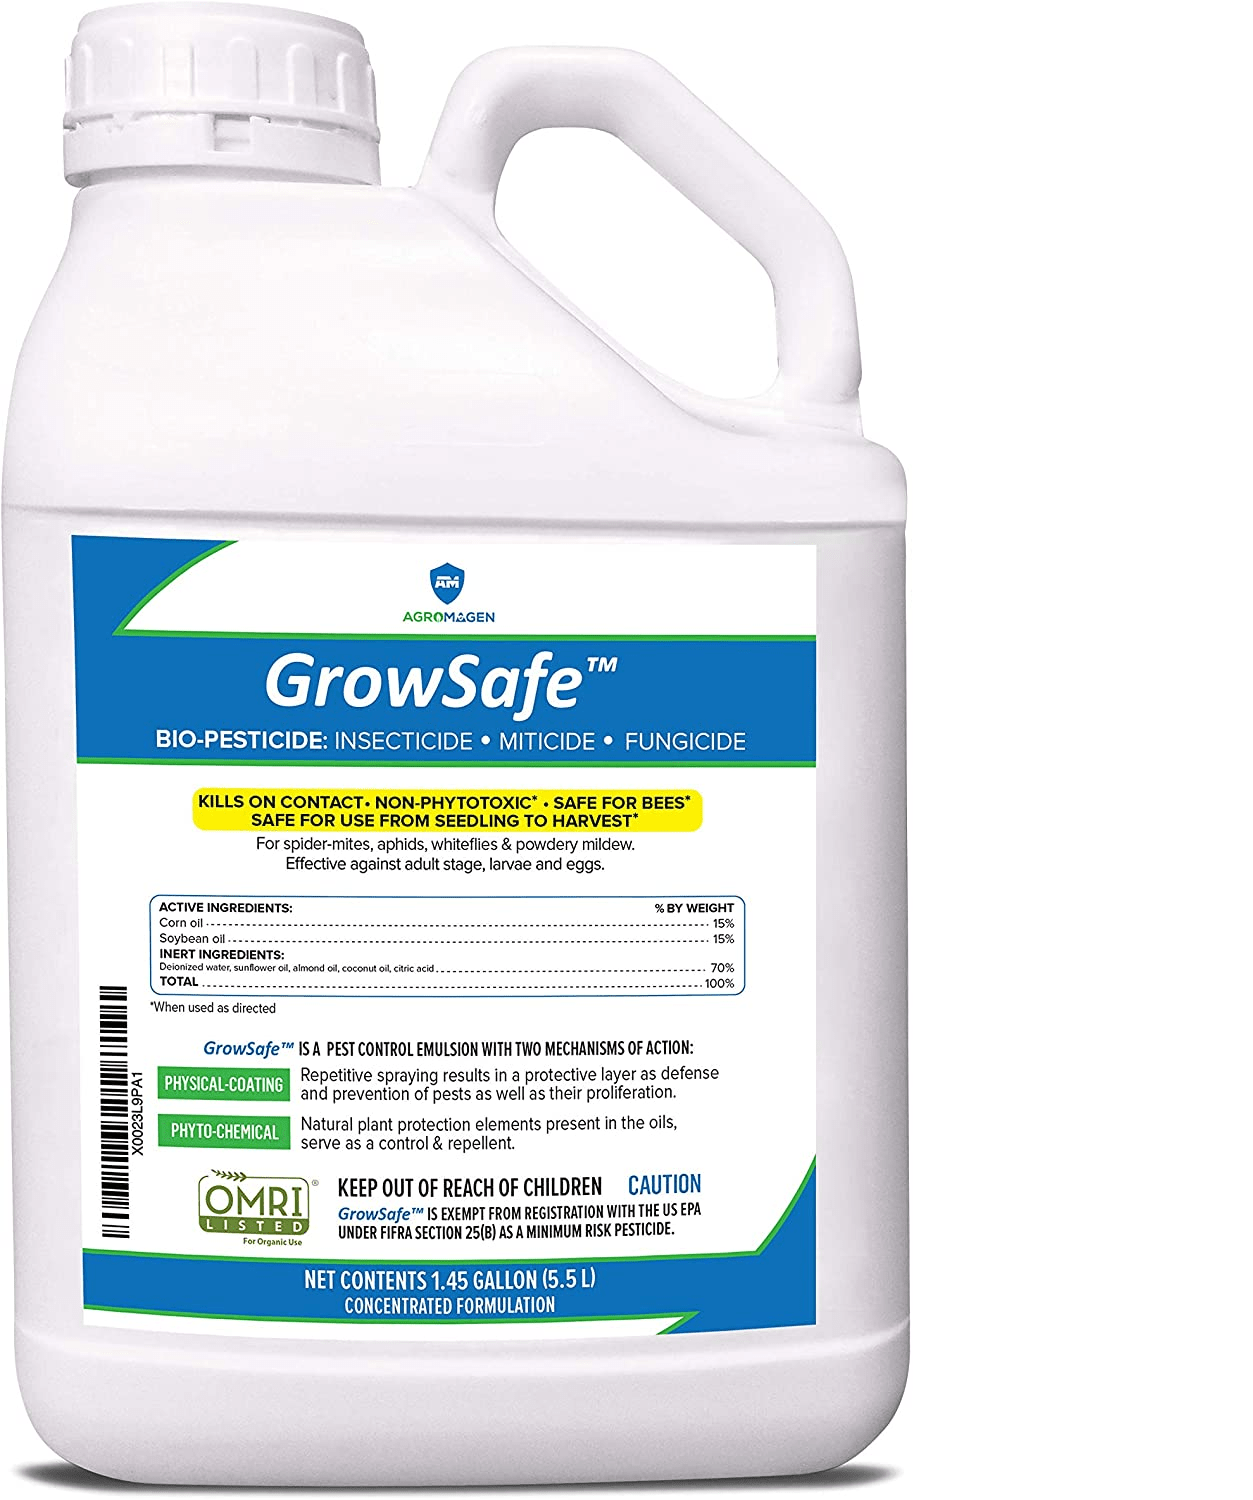 En este momento estás viendo AgroMagen, La Sobresaliente Efectividad de Insecticida, Fungicida y Acaricida Combinados 2021